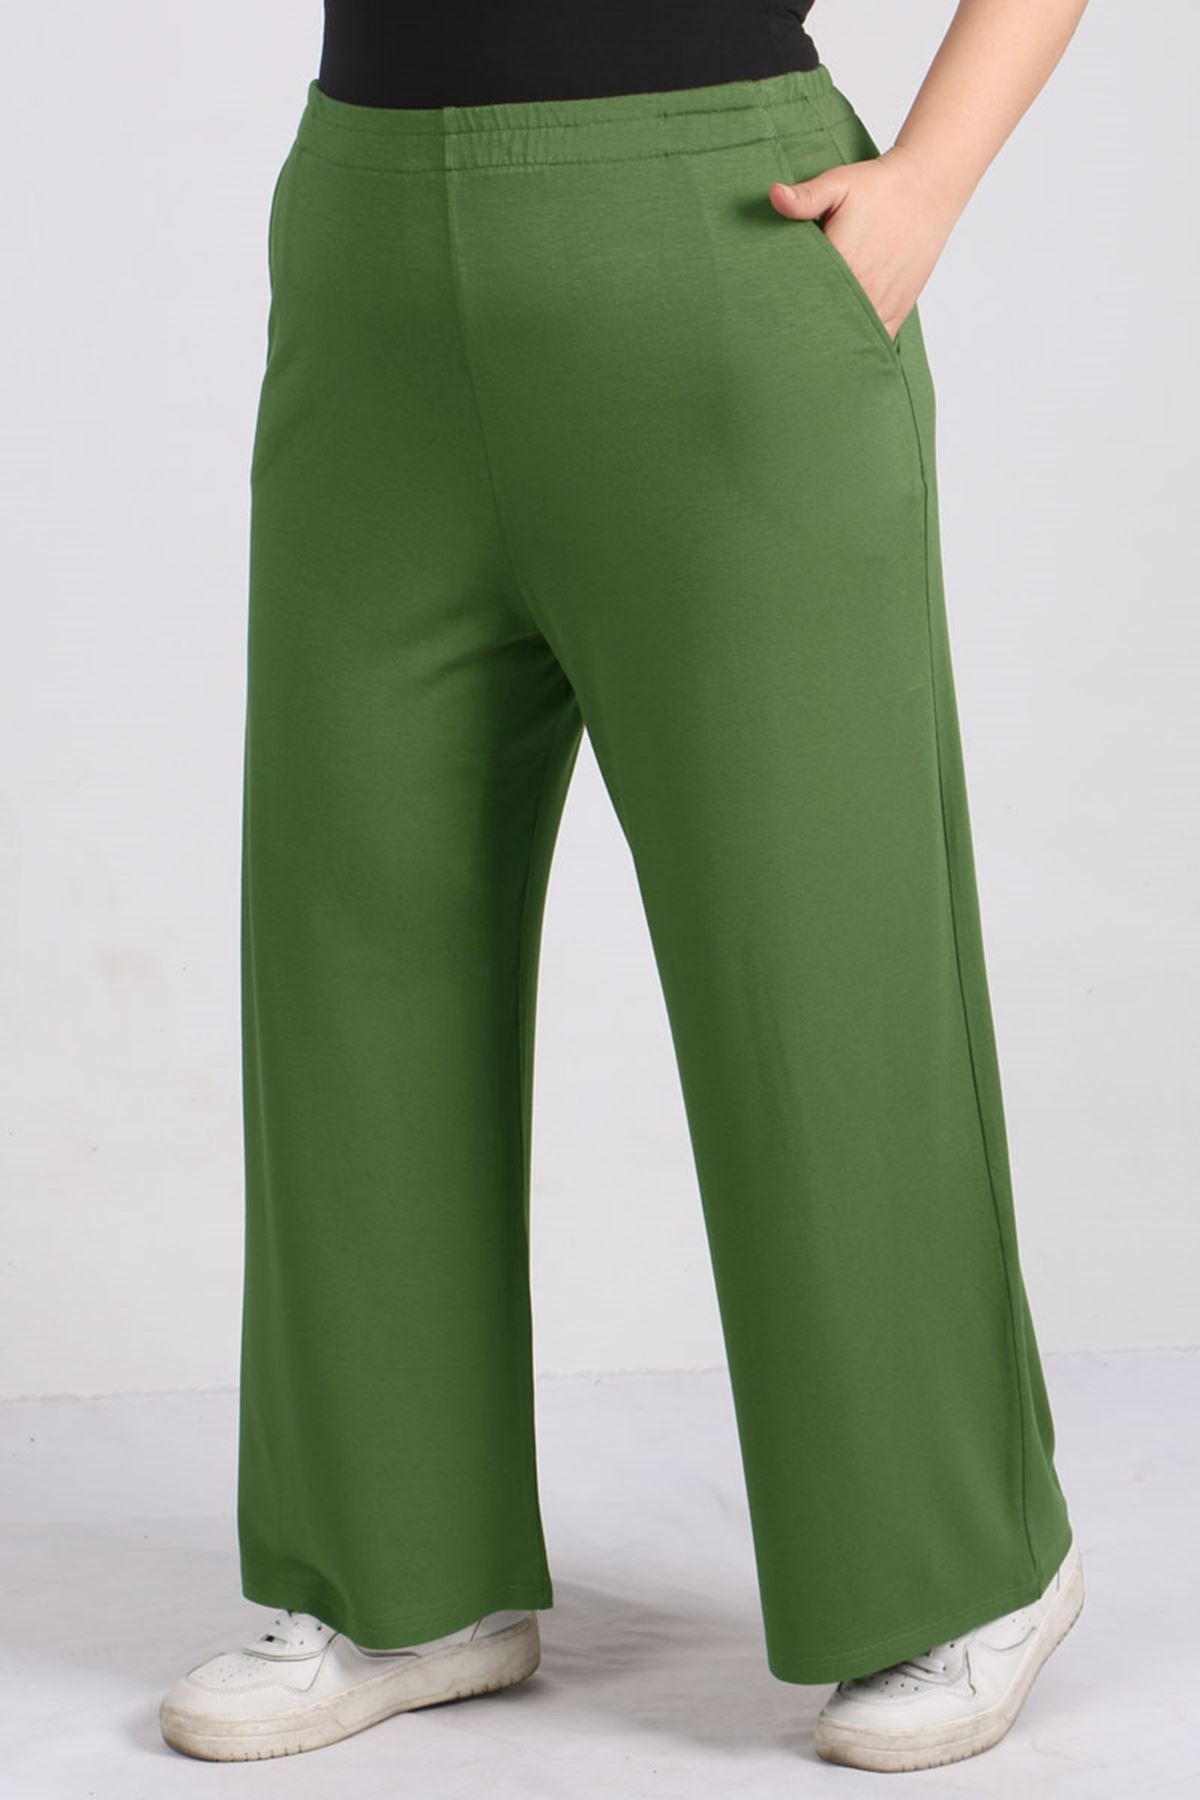 29010  Büyük Beden Beli Lastikli Penye Pantolon -Yeşil 